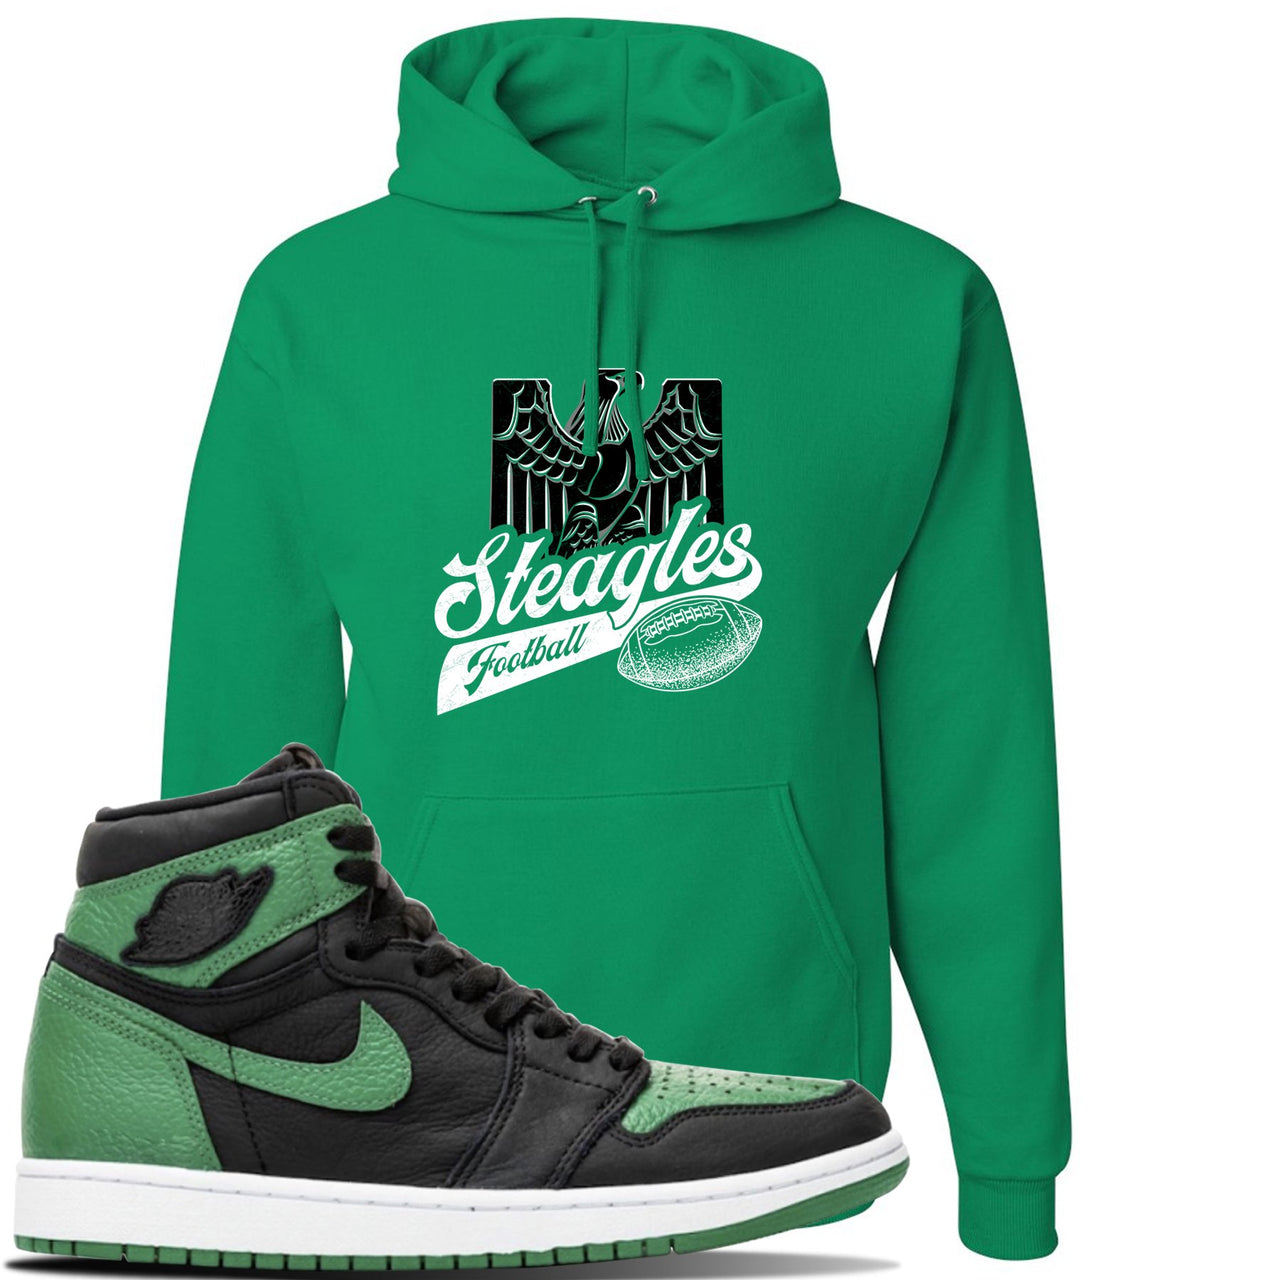 Jordan 1 Retro High OG Pine Green Gym Sneaker Kelly Green Pullover Hoodie | Hoodie to match Air Jordan 1 Retro High OG Pine Green Gym Shoes | Steagles